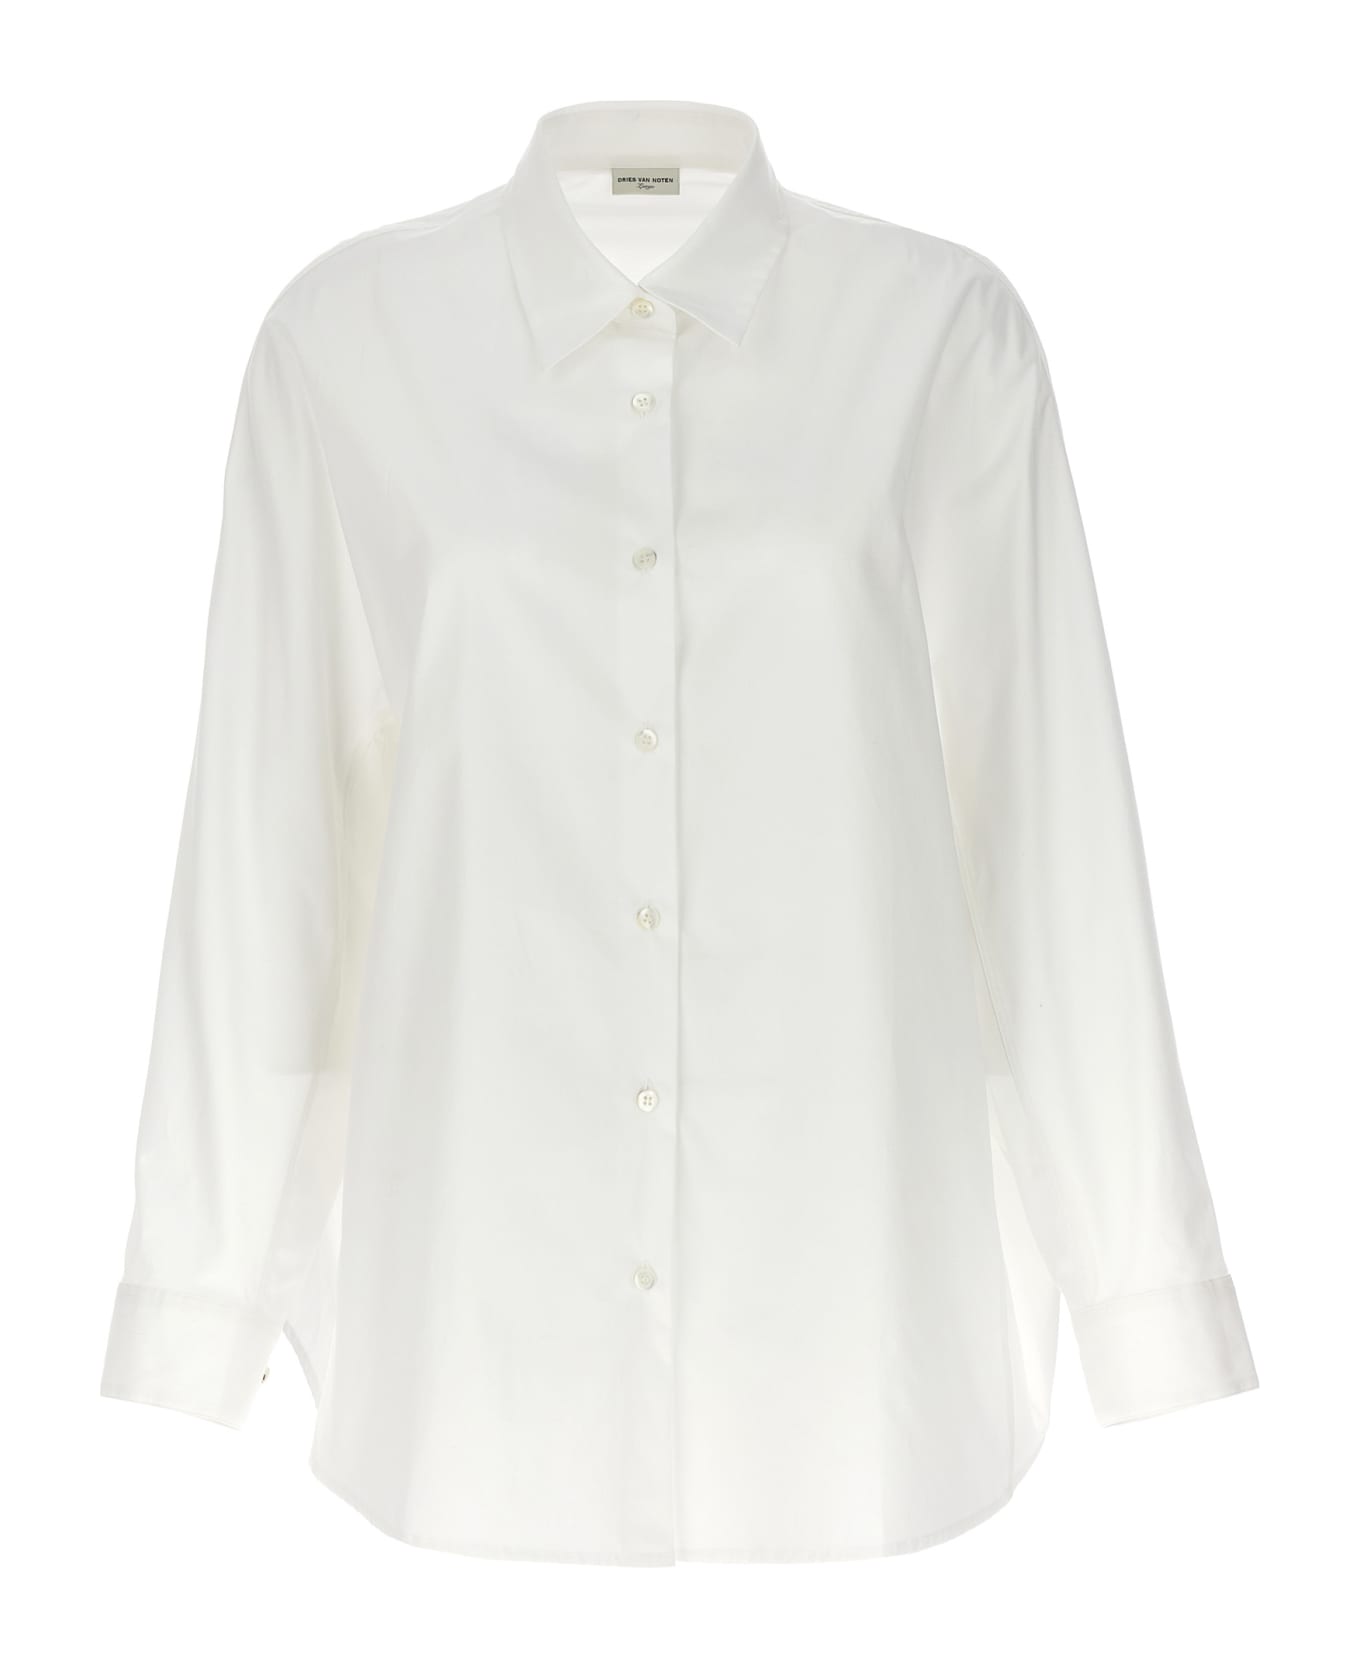 Dries Van Noten 'casio' Shirt - White